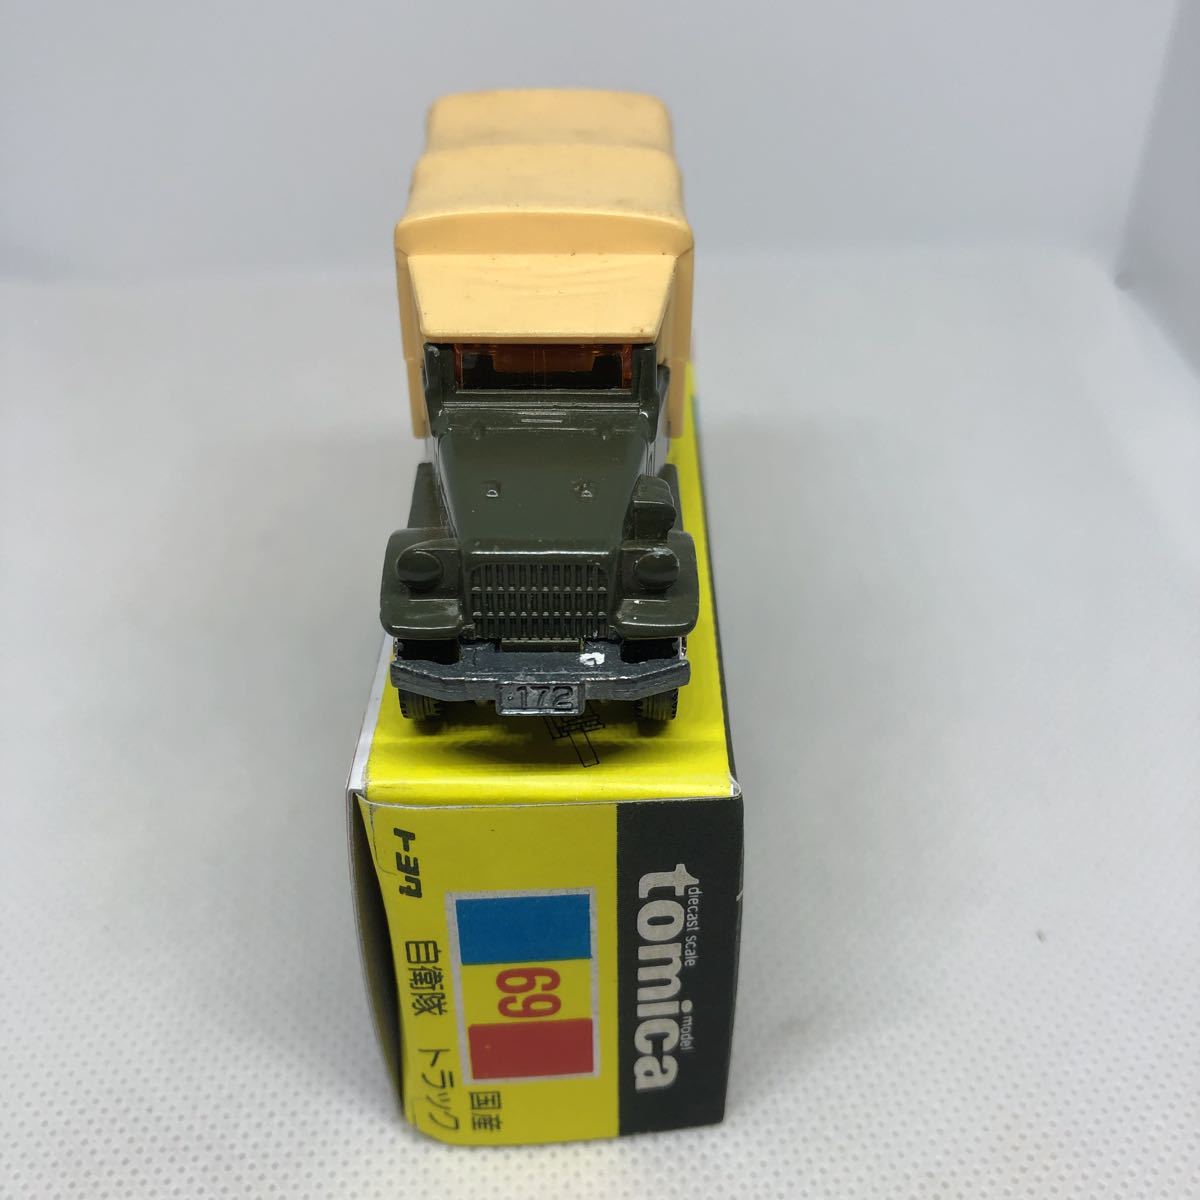 トミカ 日本製 黒箱 69 トヨタ 自衛隊 トラック 当時物 絶版 の商品